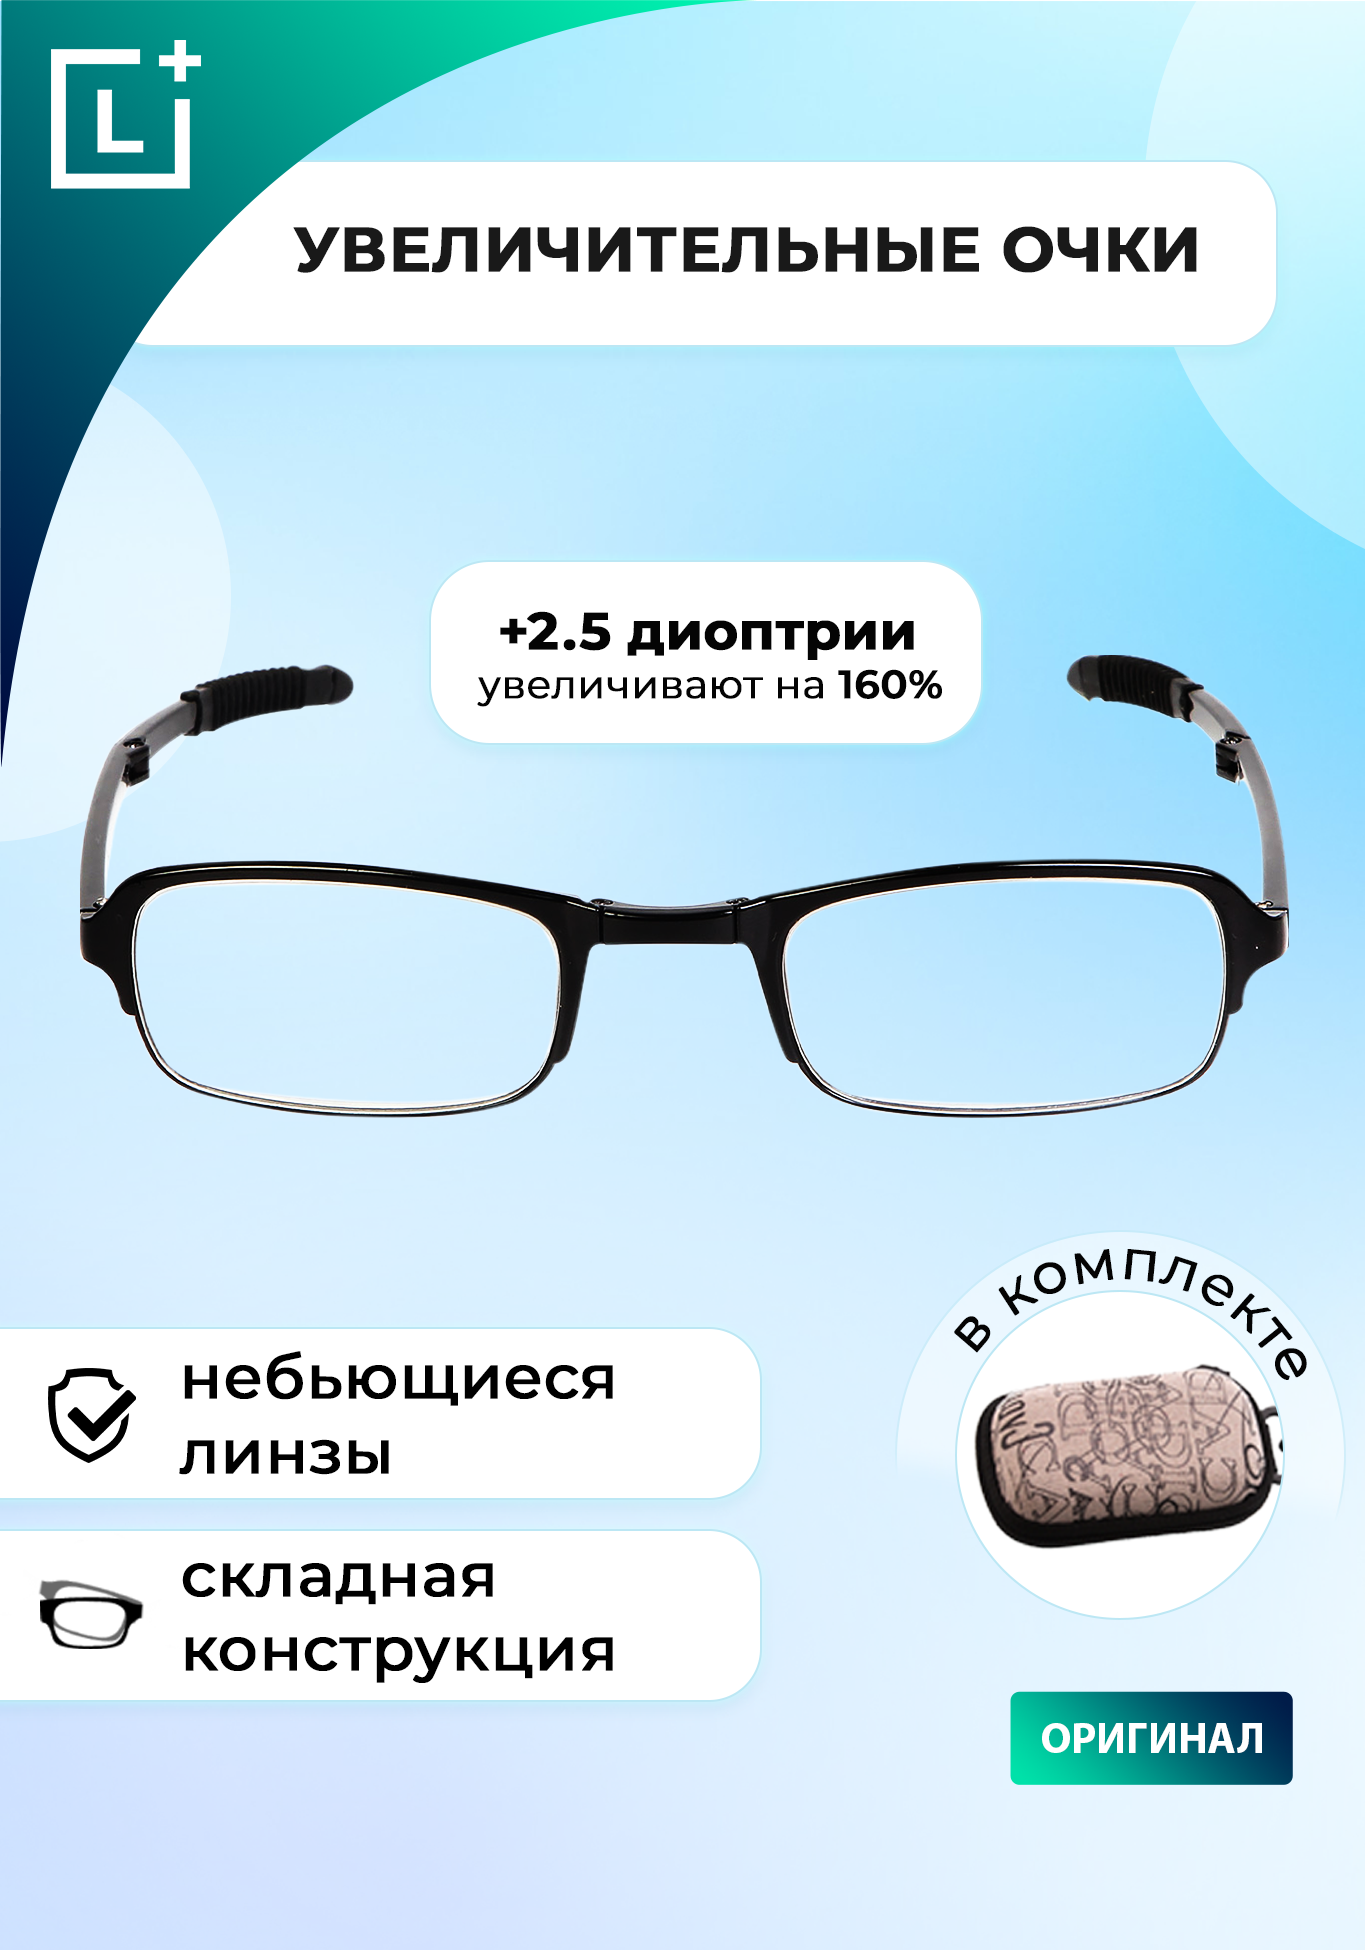 Складные увеличительные очки "Фокус Плюс"